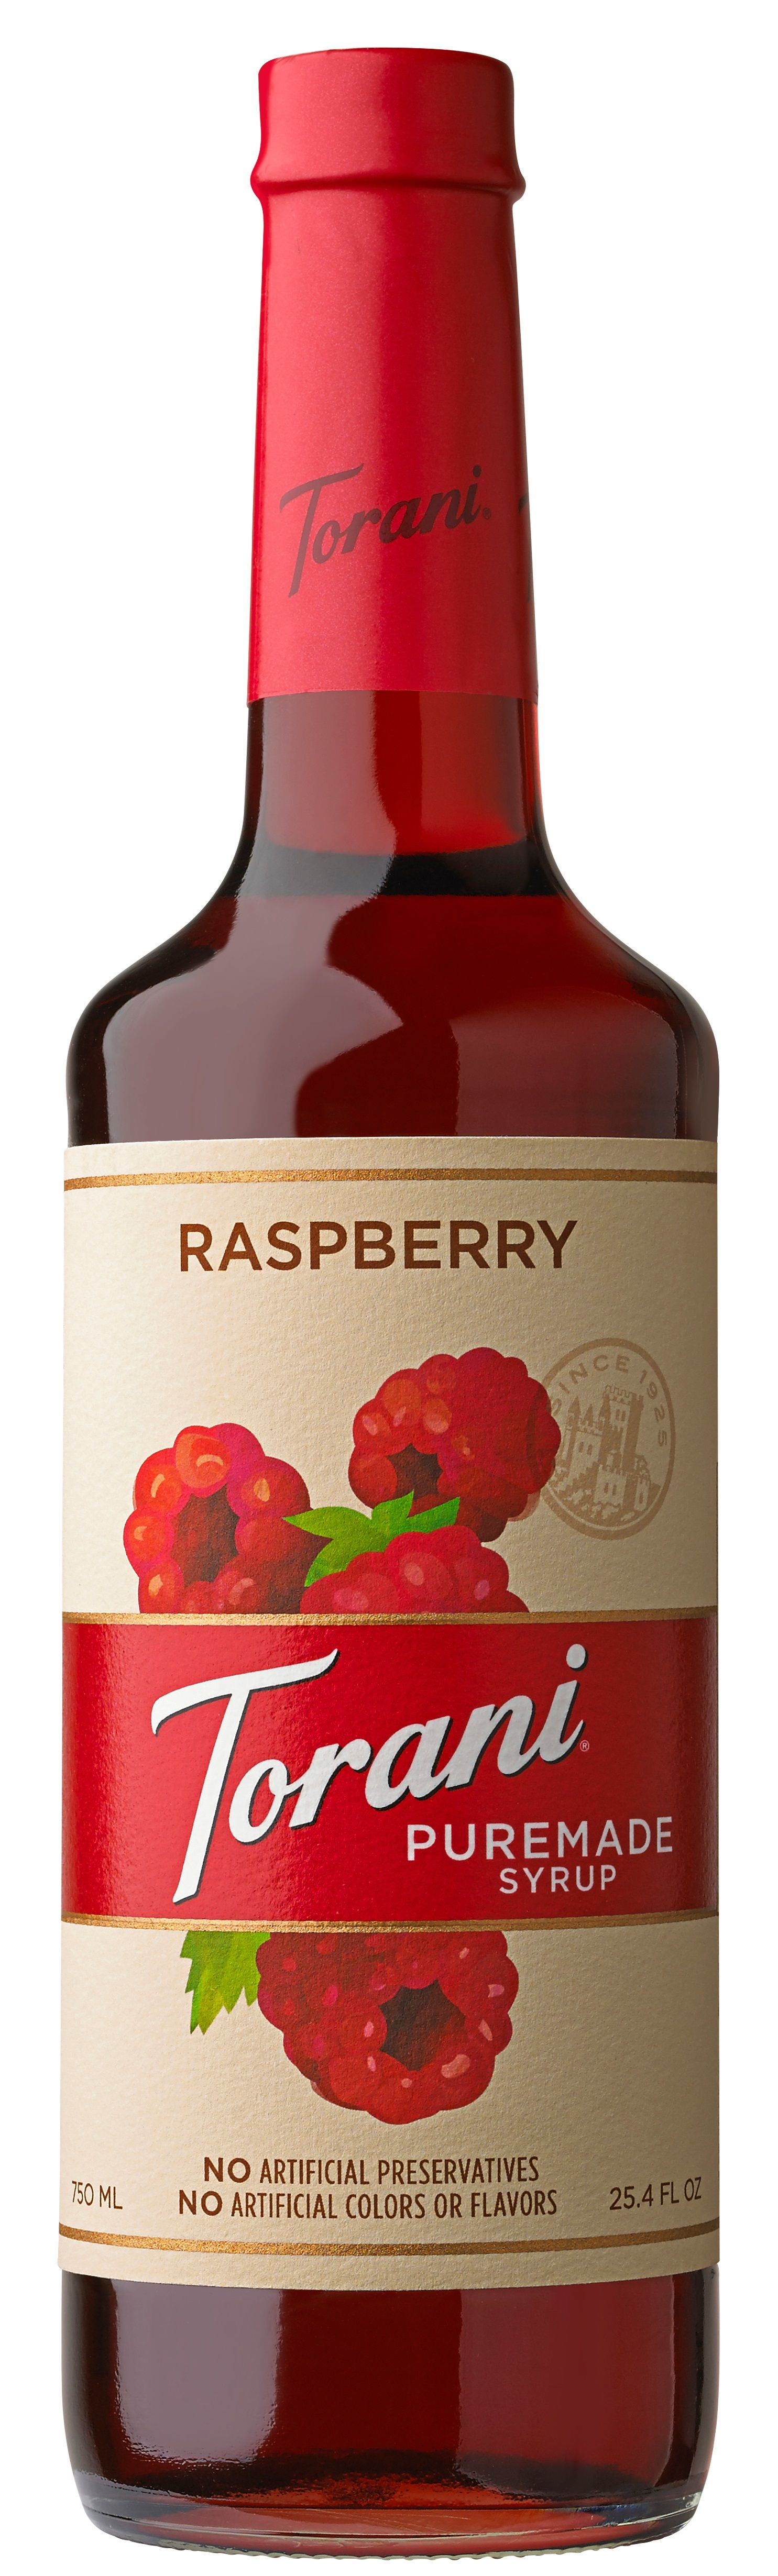 Torani - Puremade Syrup Raspberry